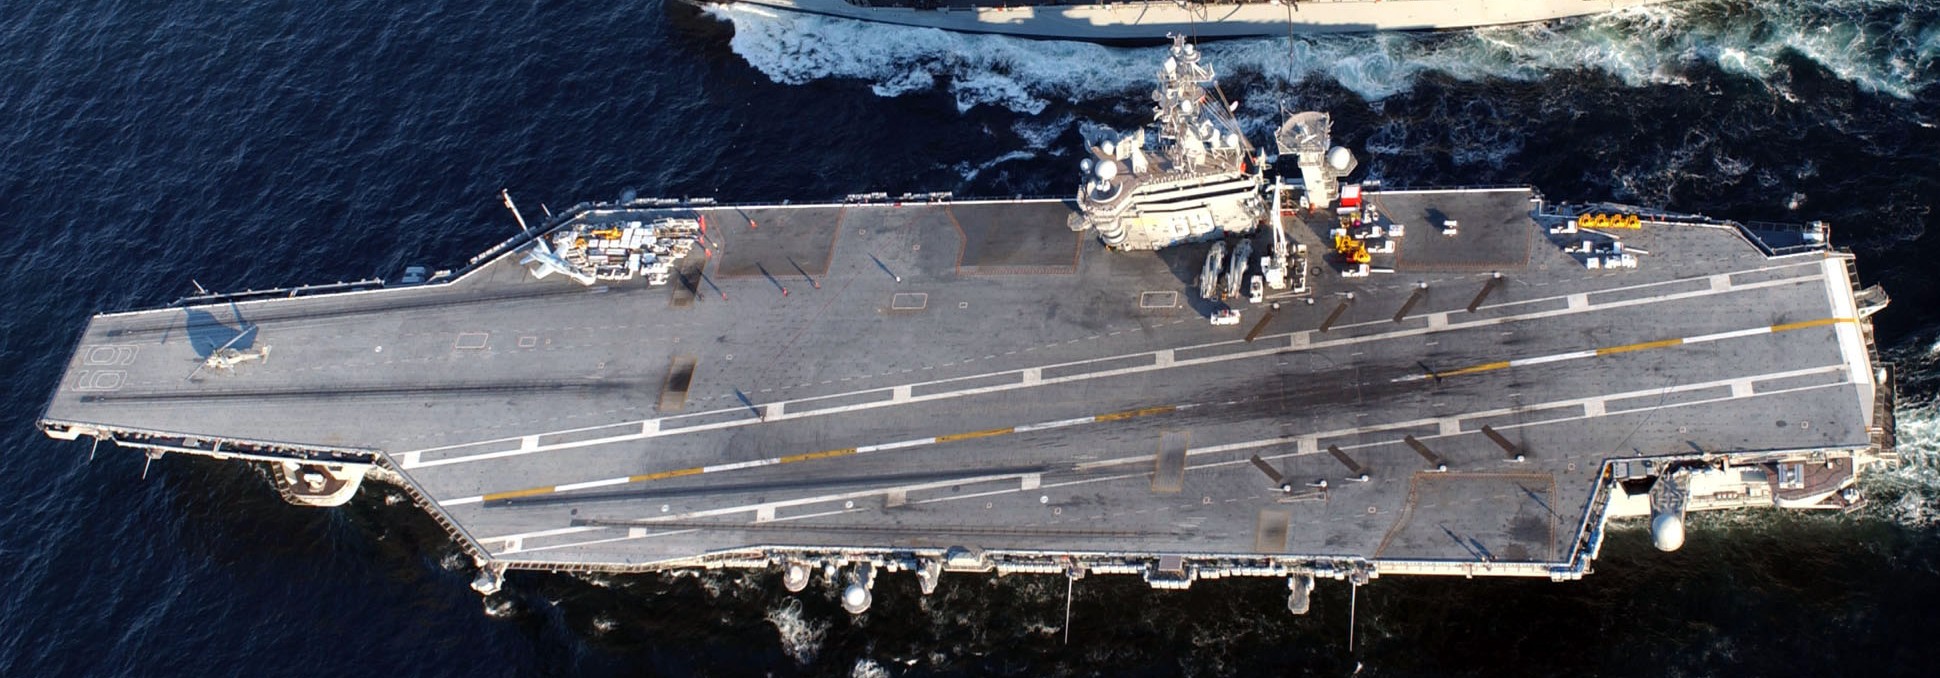 uss dwight d. eisenhower cvn-69 aircraft carrier 2005 220